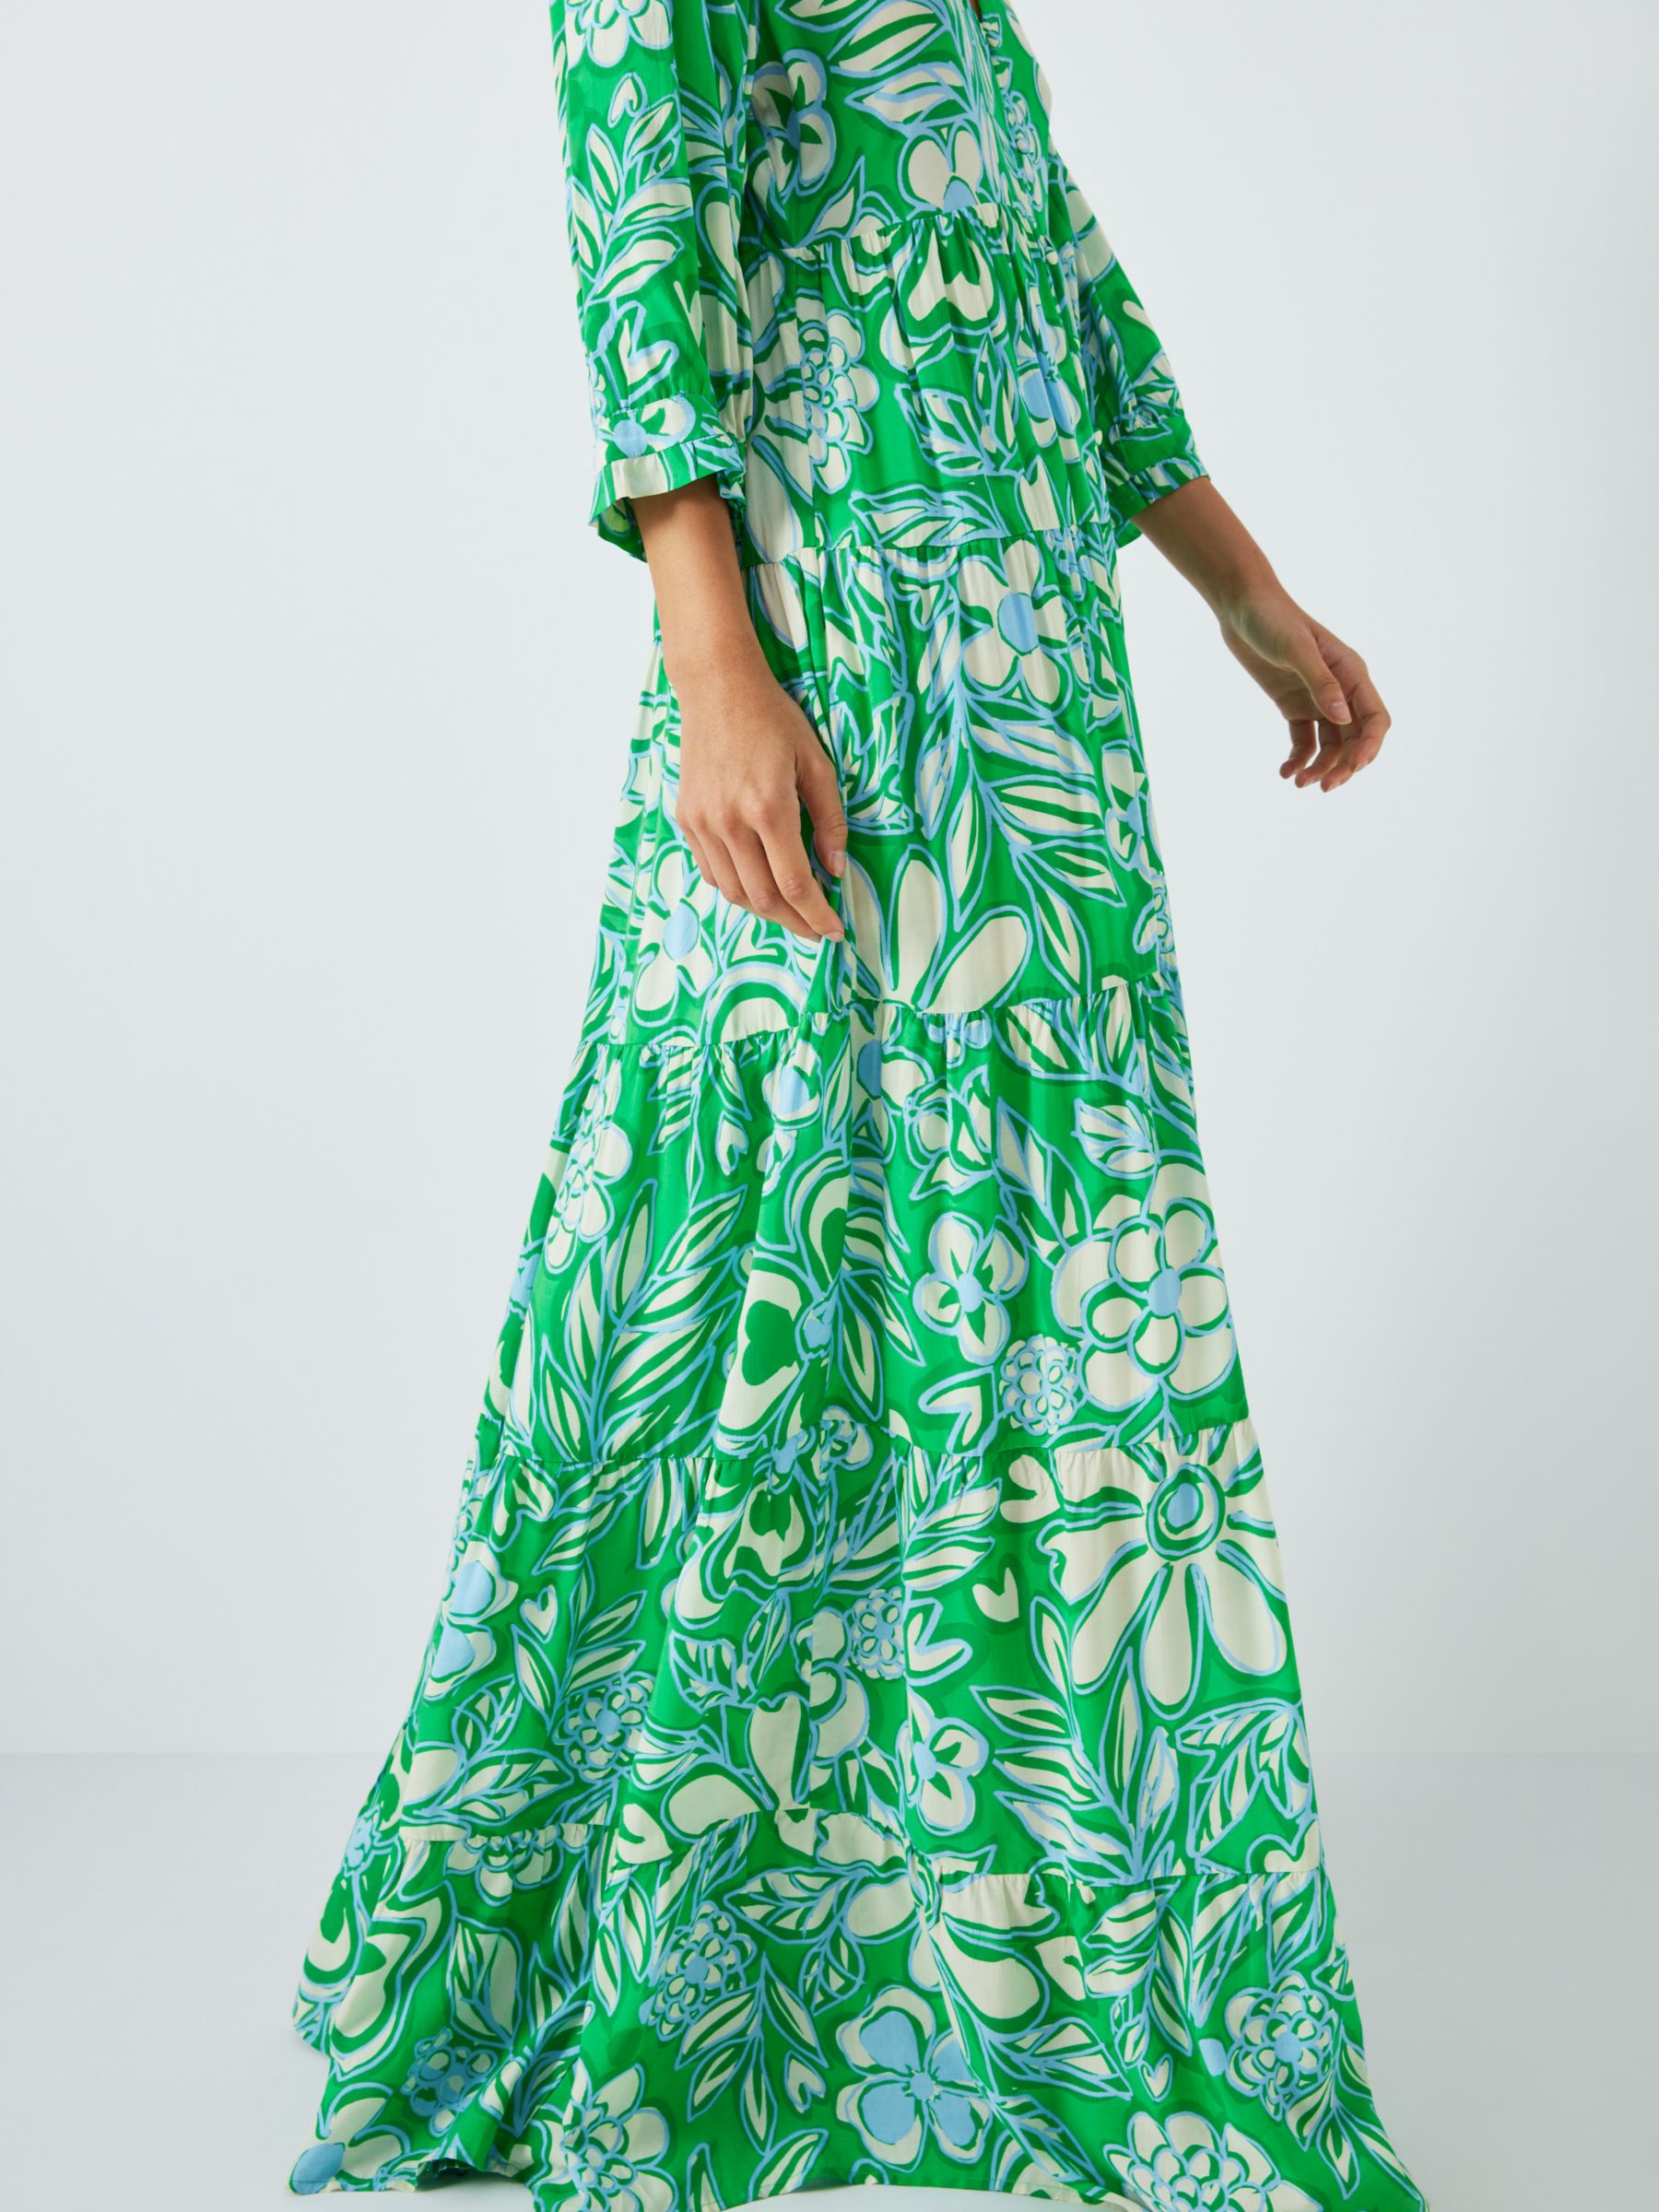 Fabienne Chapot Cala Floral Print Maxi Dress, Green Apple/Grass, 34